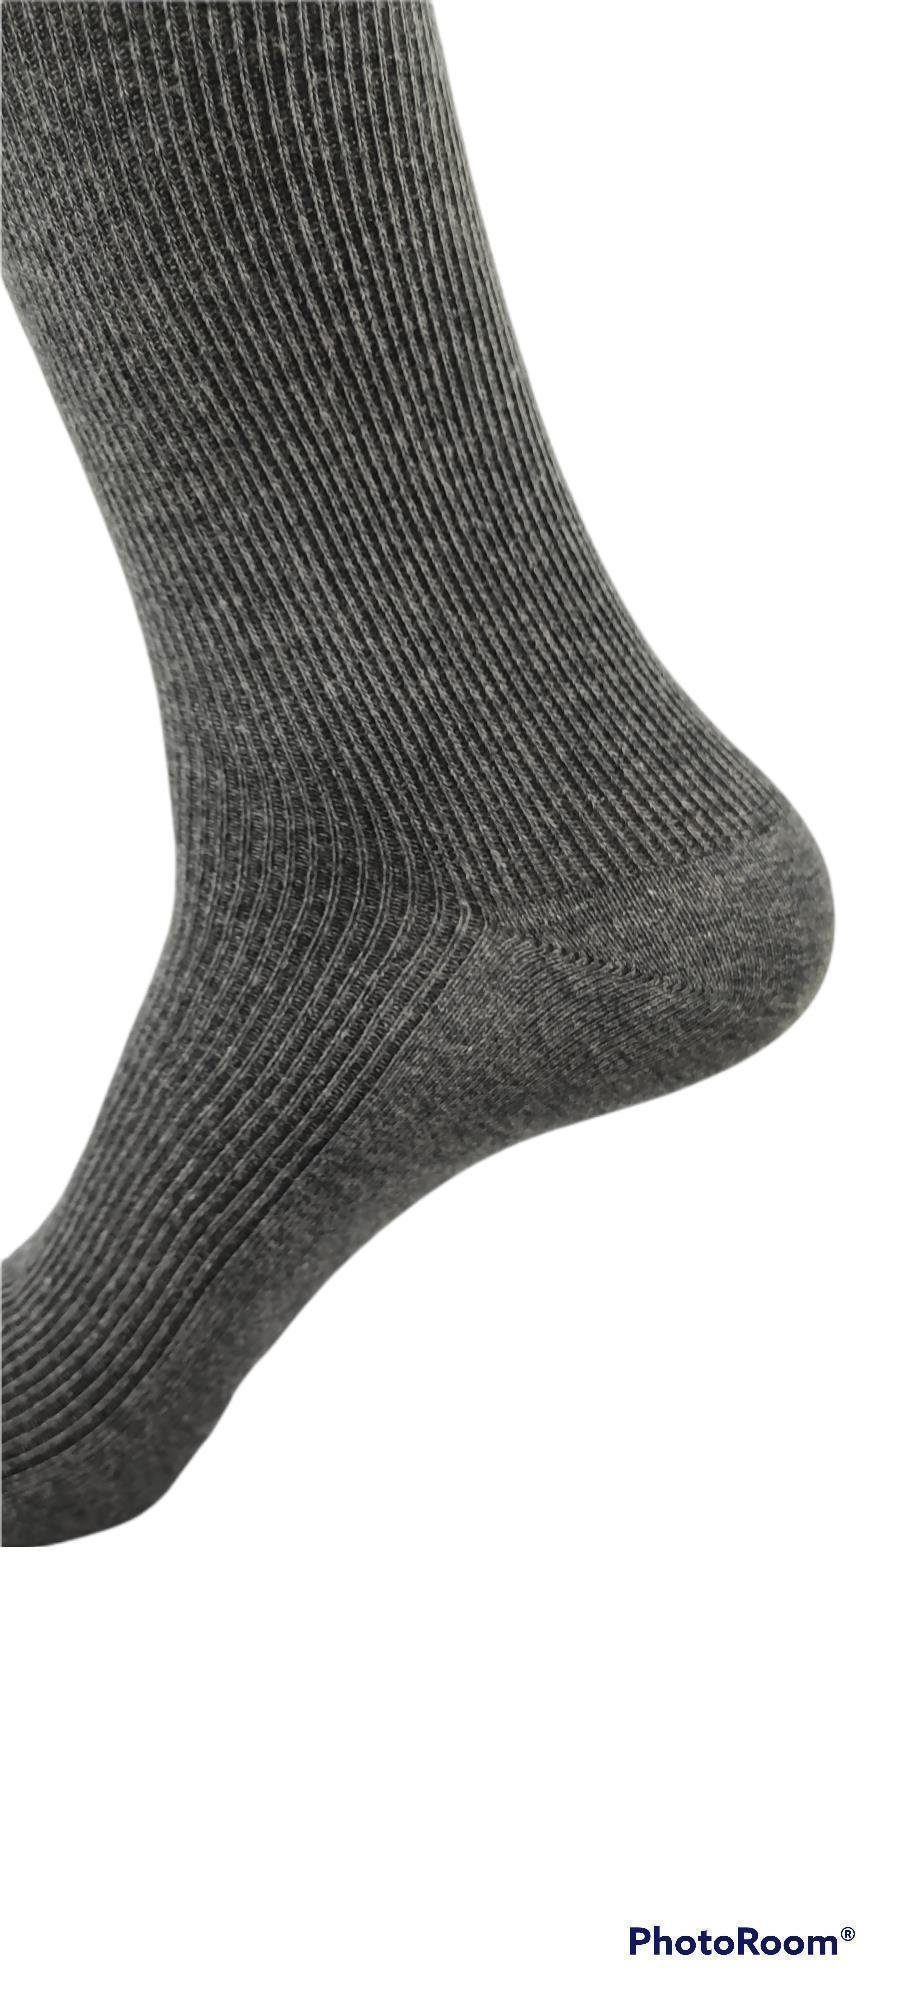 klassischer Socken Paar EloModa grau, braun, 3 Gemischt, in Freizeit Form Basicsocken Anzug Business; (3-Paar) schwarz